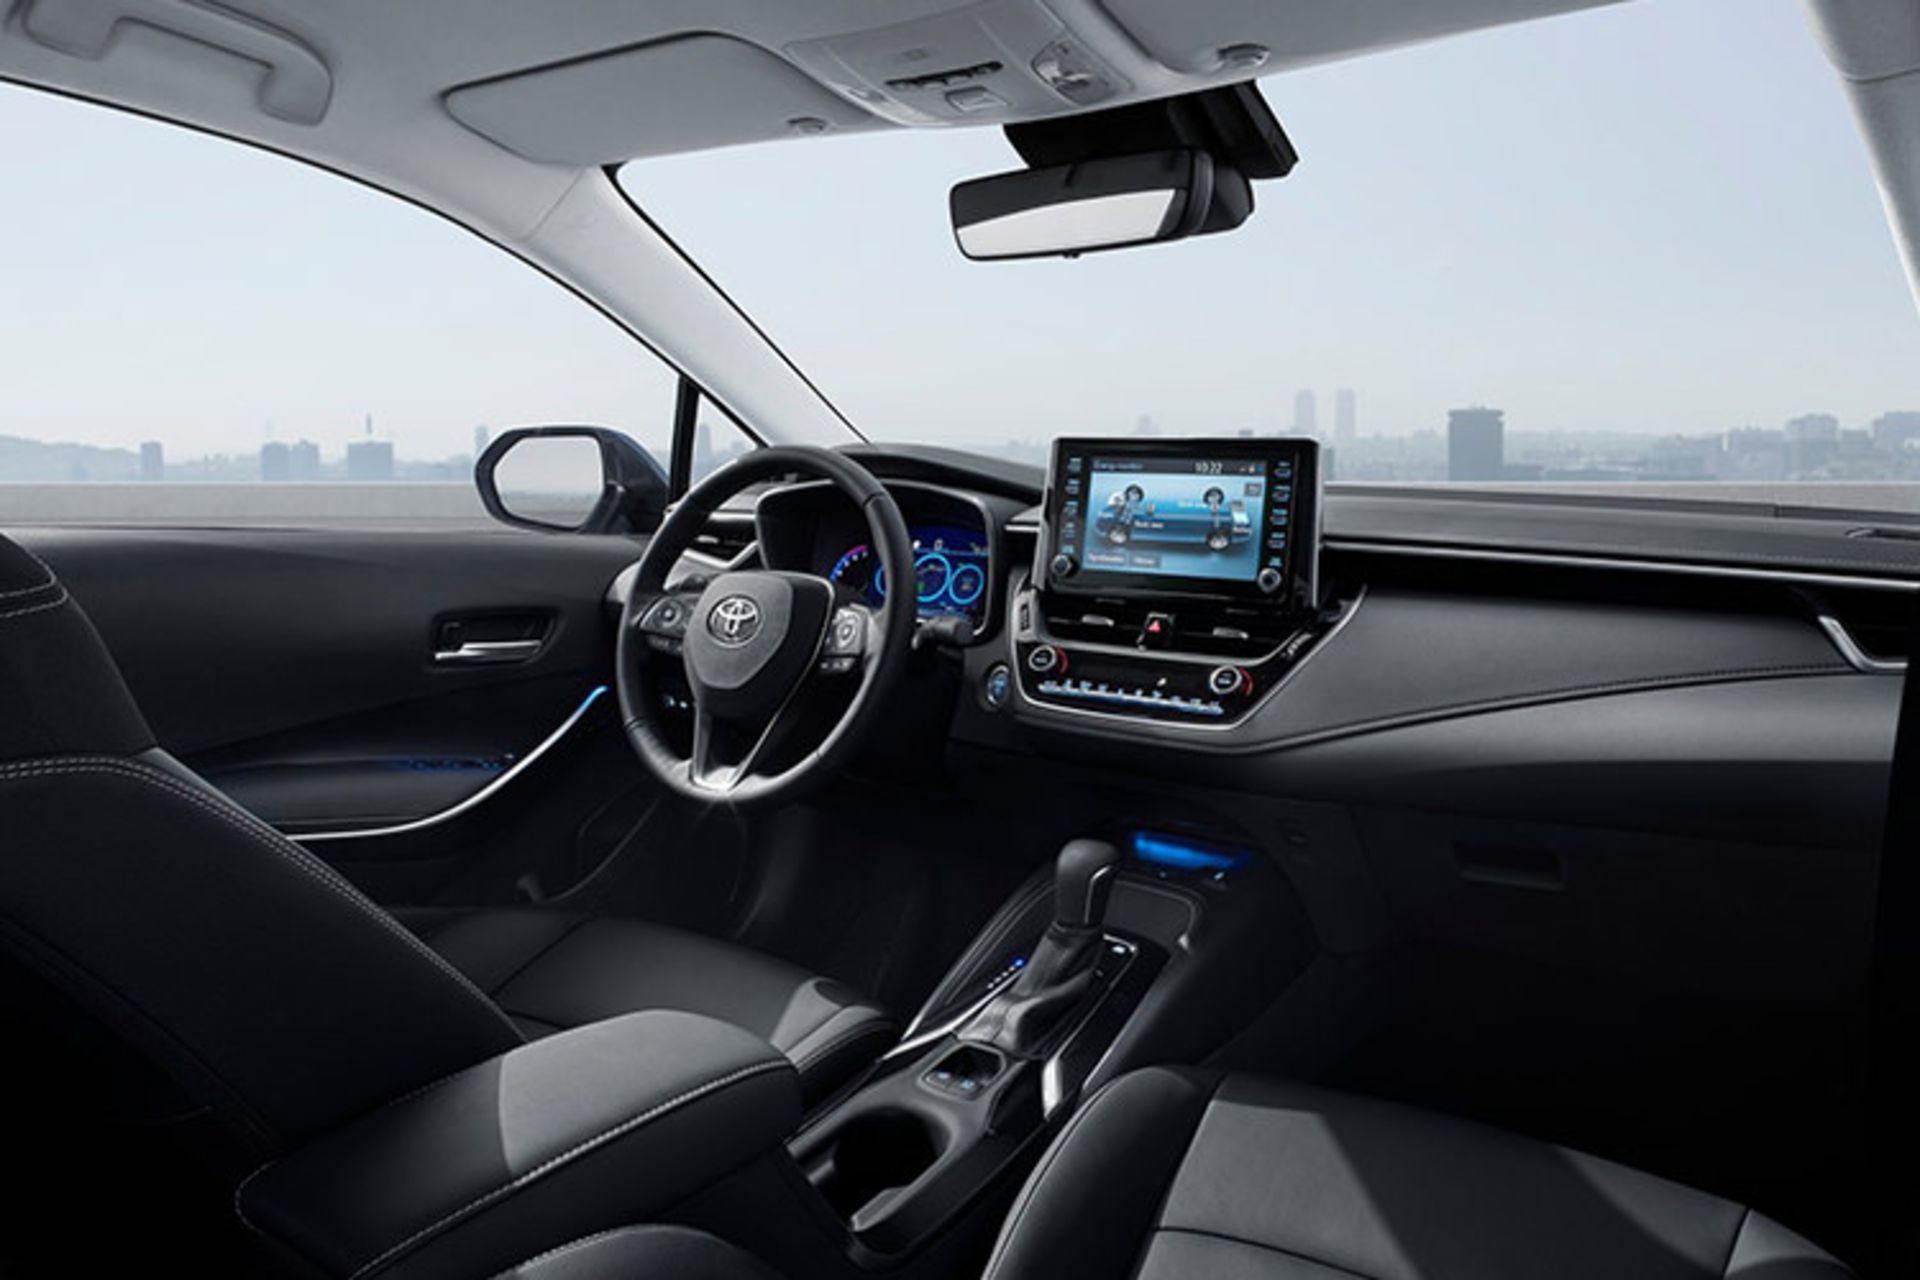 مرجع متخصصين ايران Toyota Corolla Sedan 2020